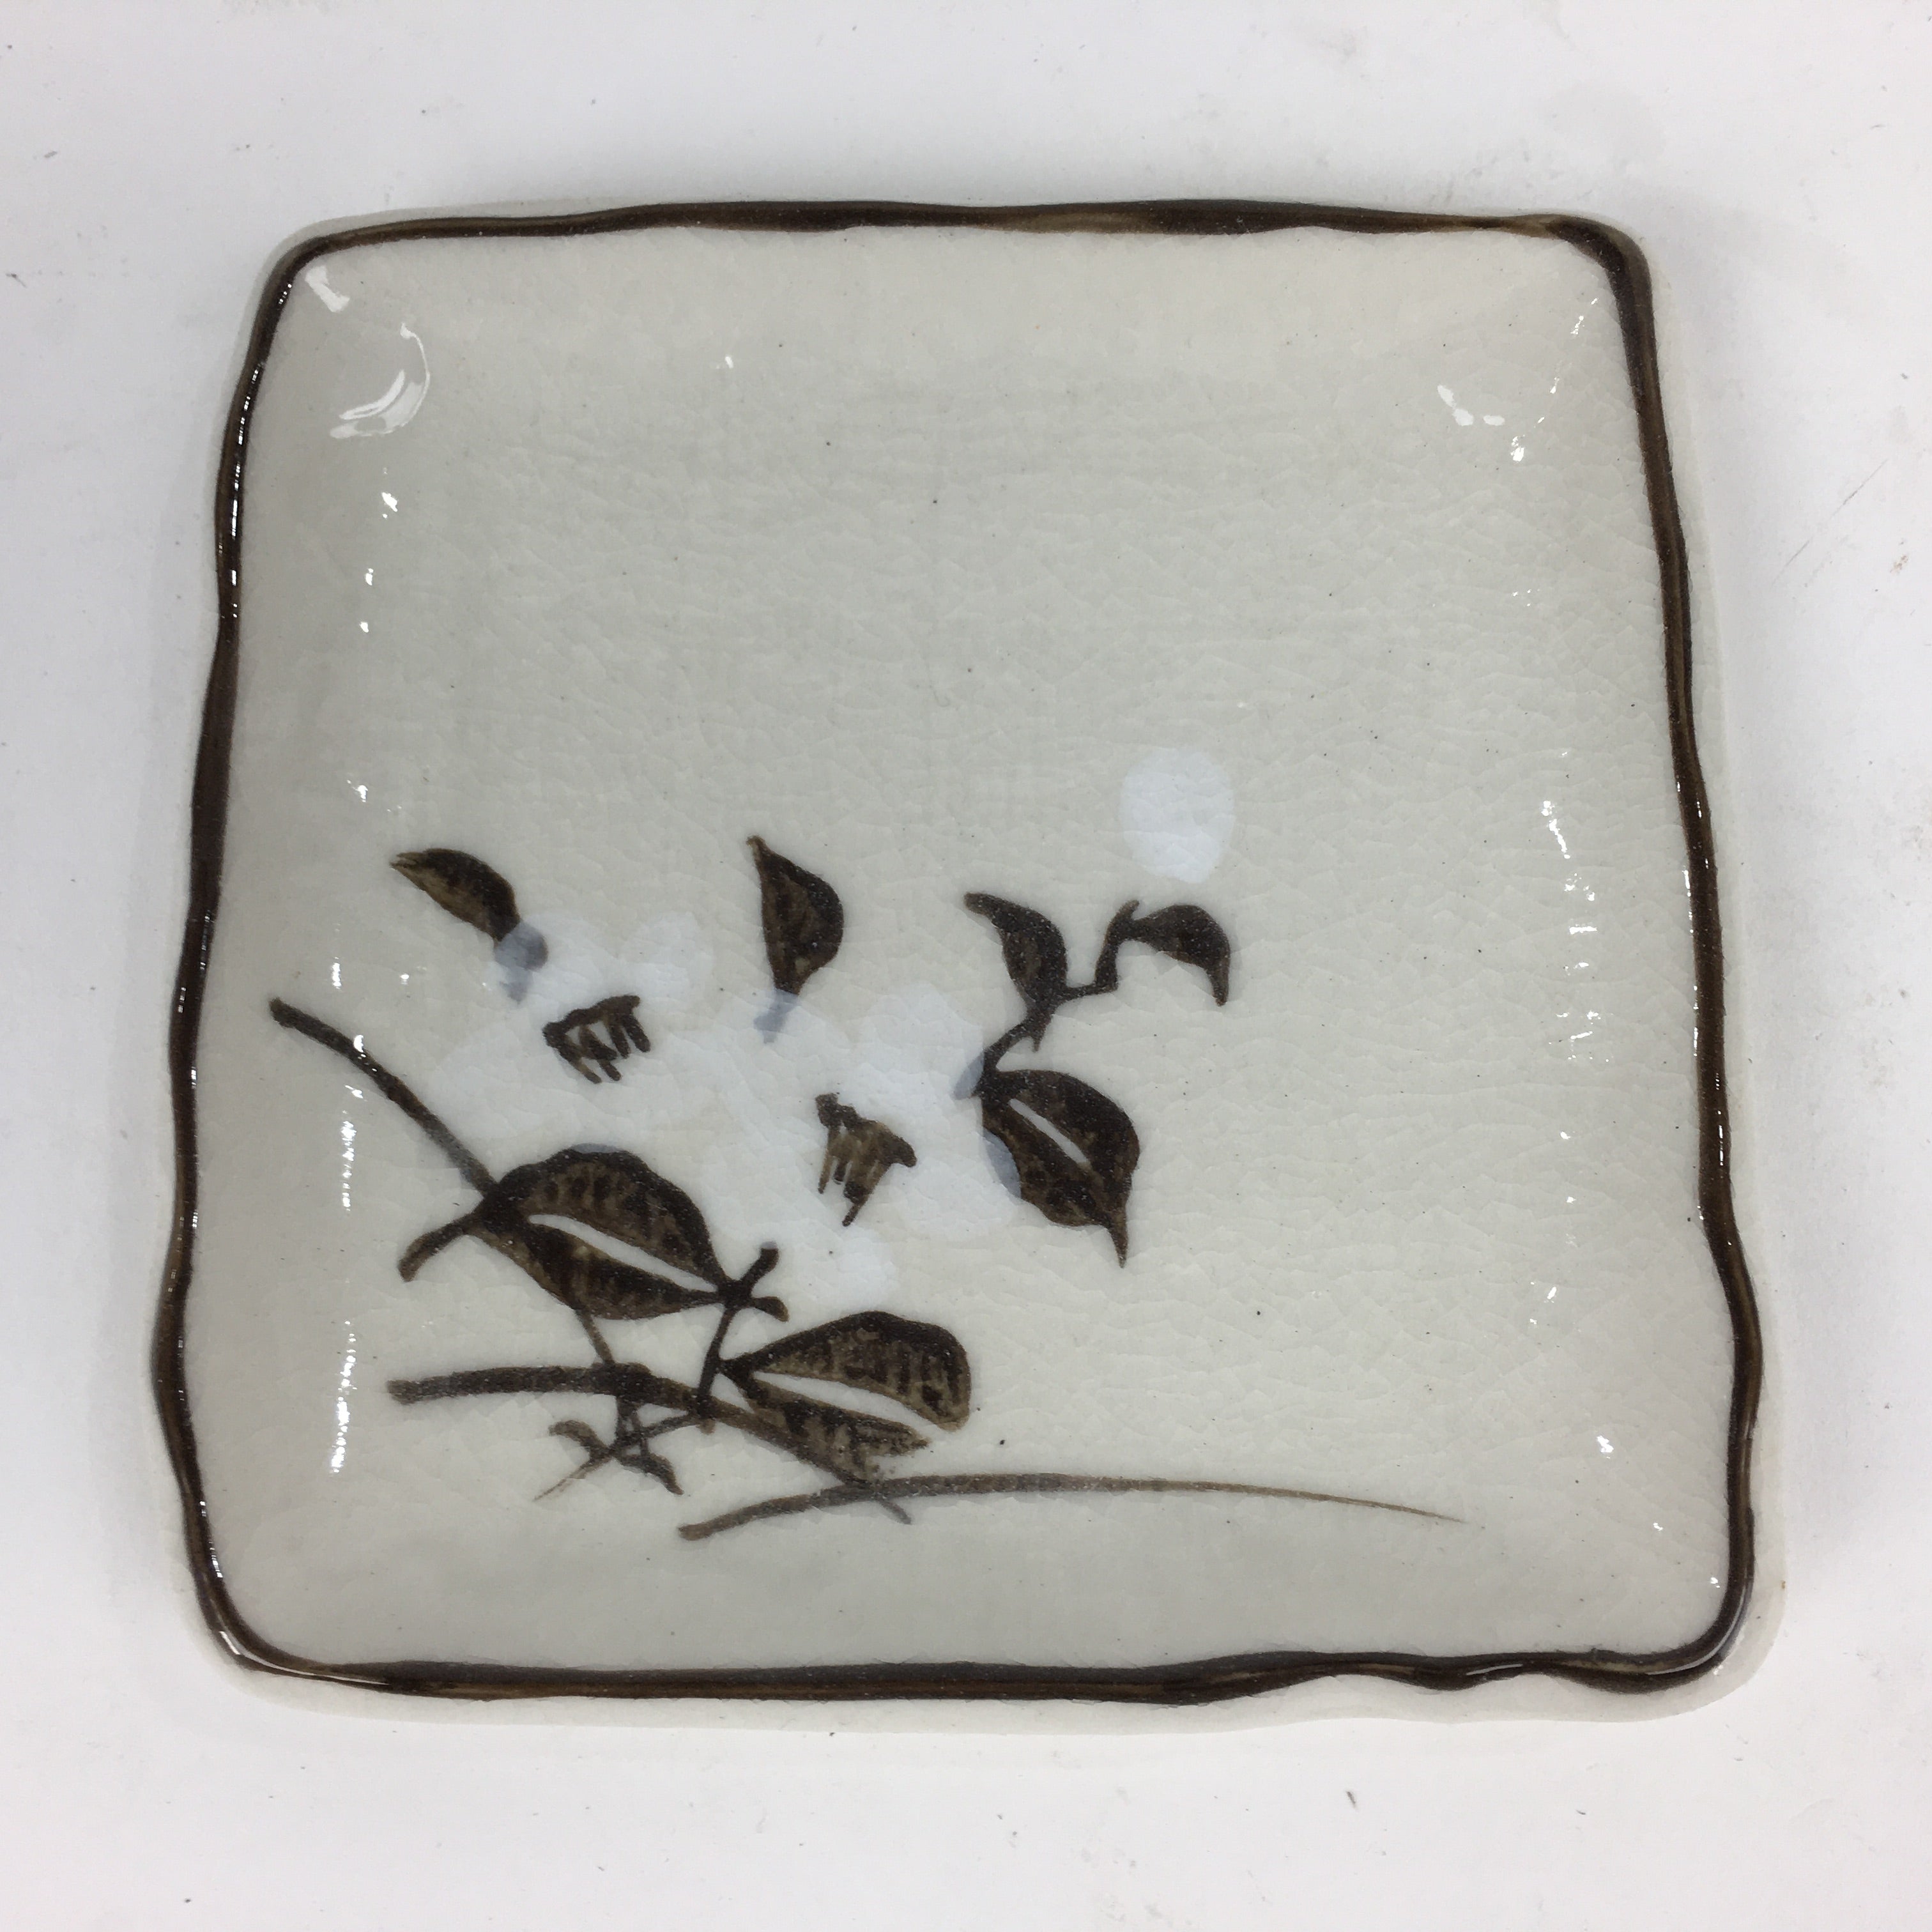 Japanese Porcelain Small Plate Vtg Square Shape White Flower Kozara PP776